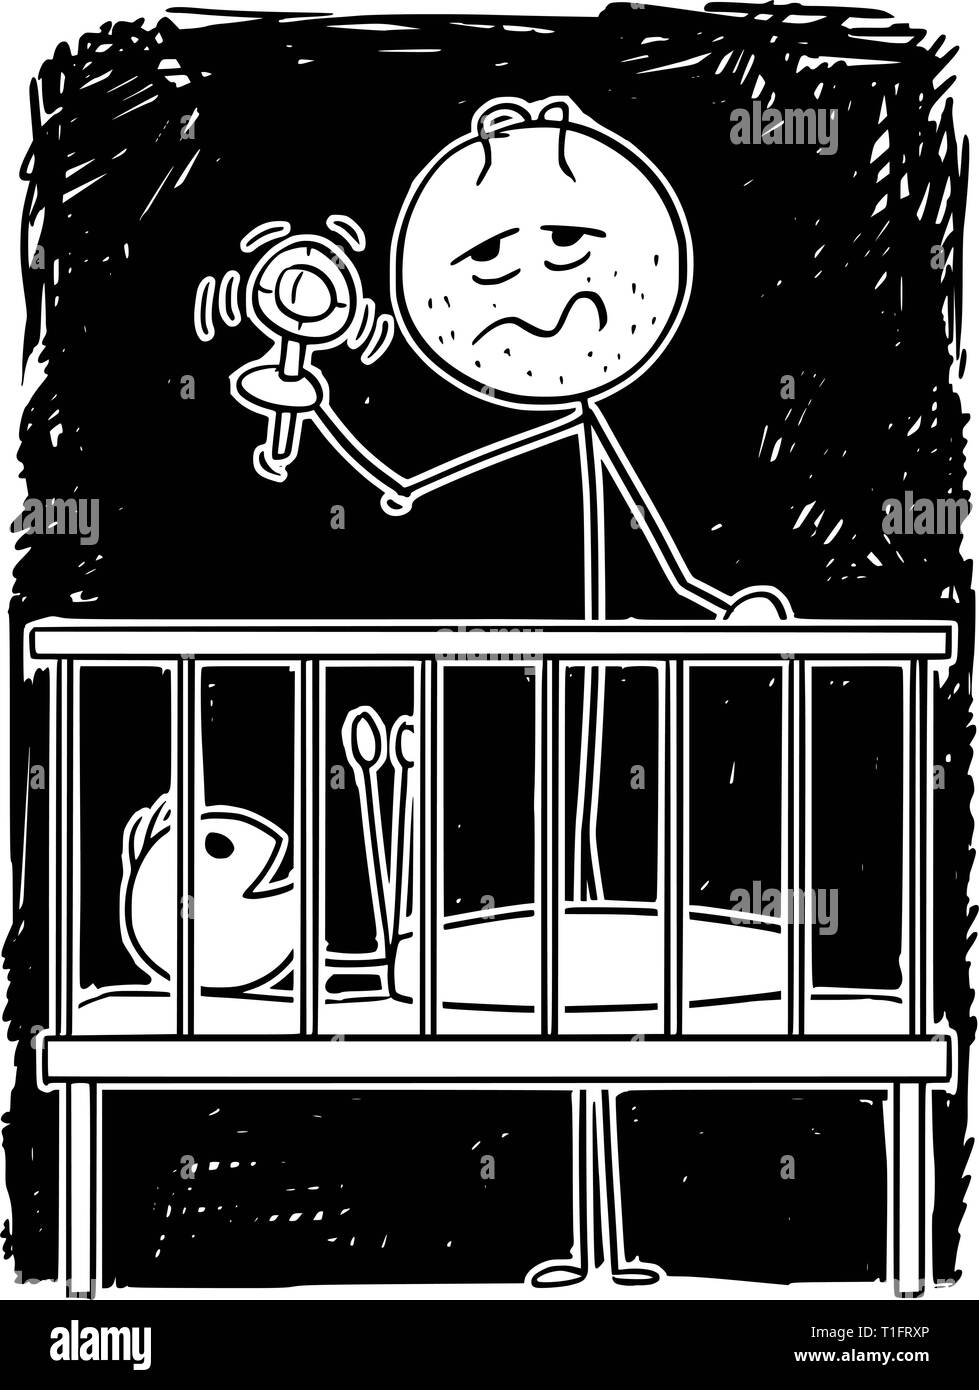 Cartoon Strichmännchen Zeichnung konzeptuelle Abbildung: müde Eltern oder Vater unterhaltsam Baby im Kinderbett in der Nacht mit Rassel. Stock Vektor